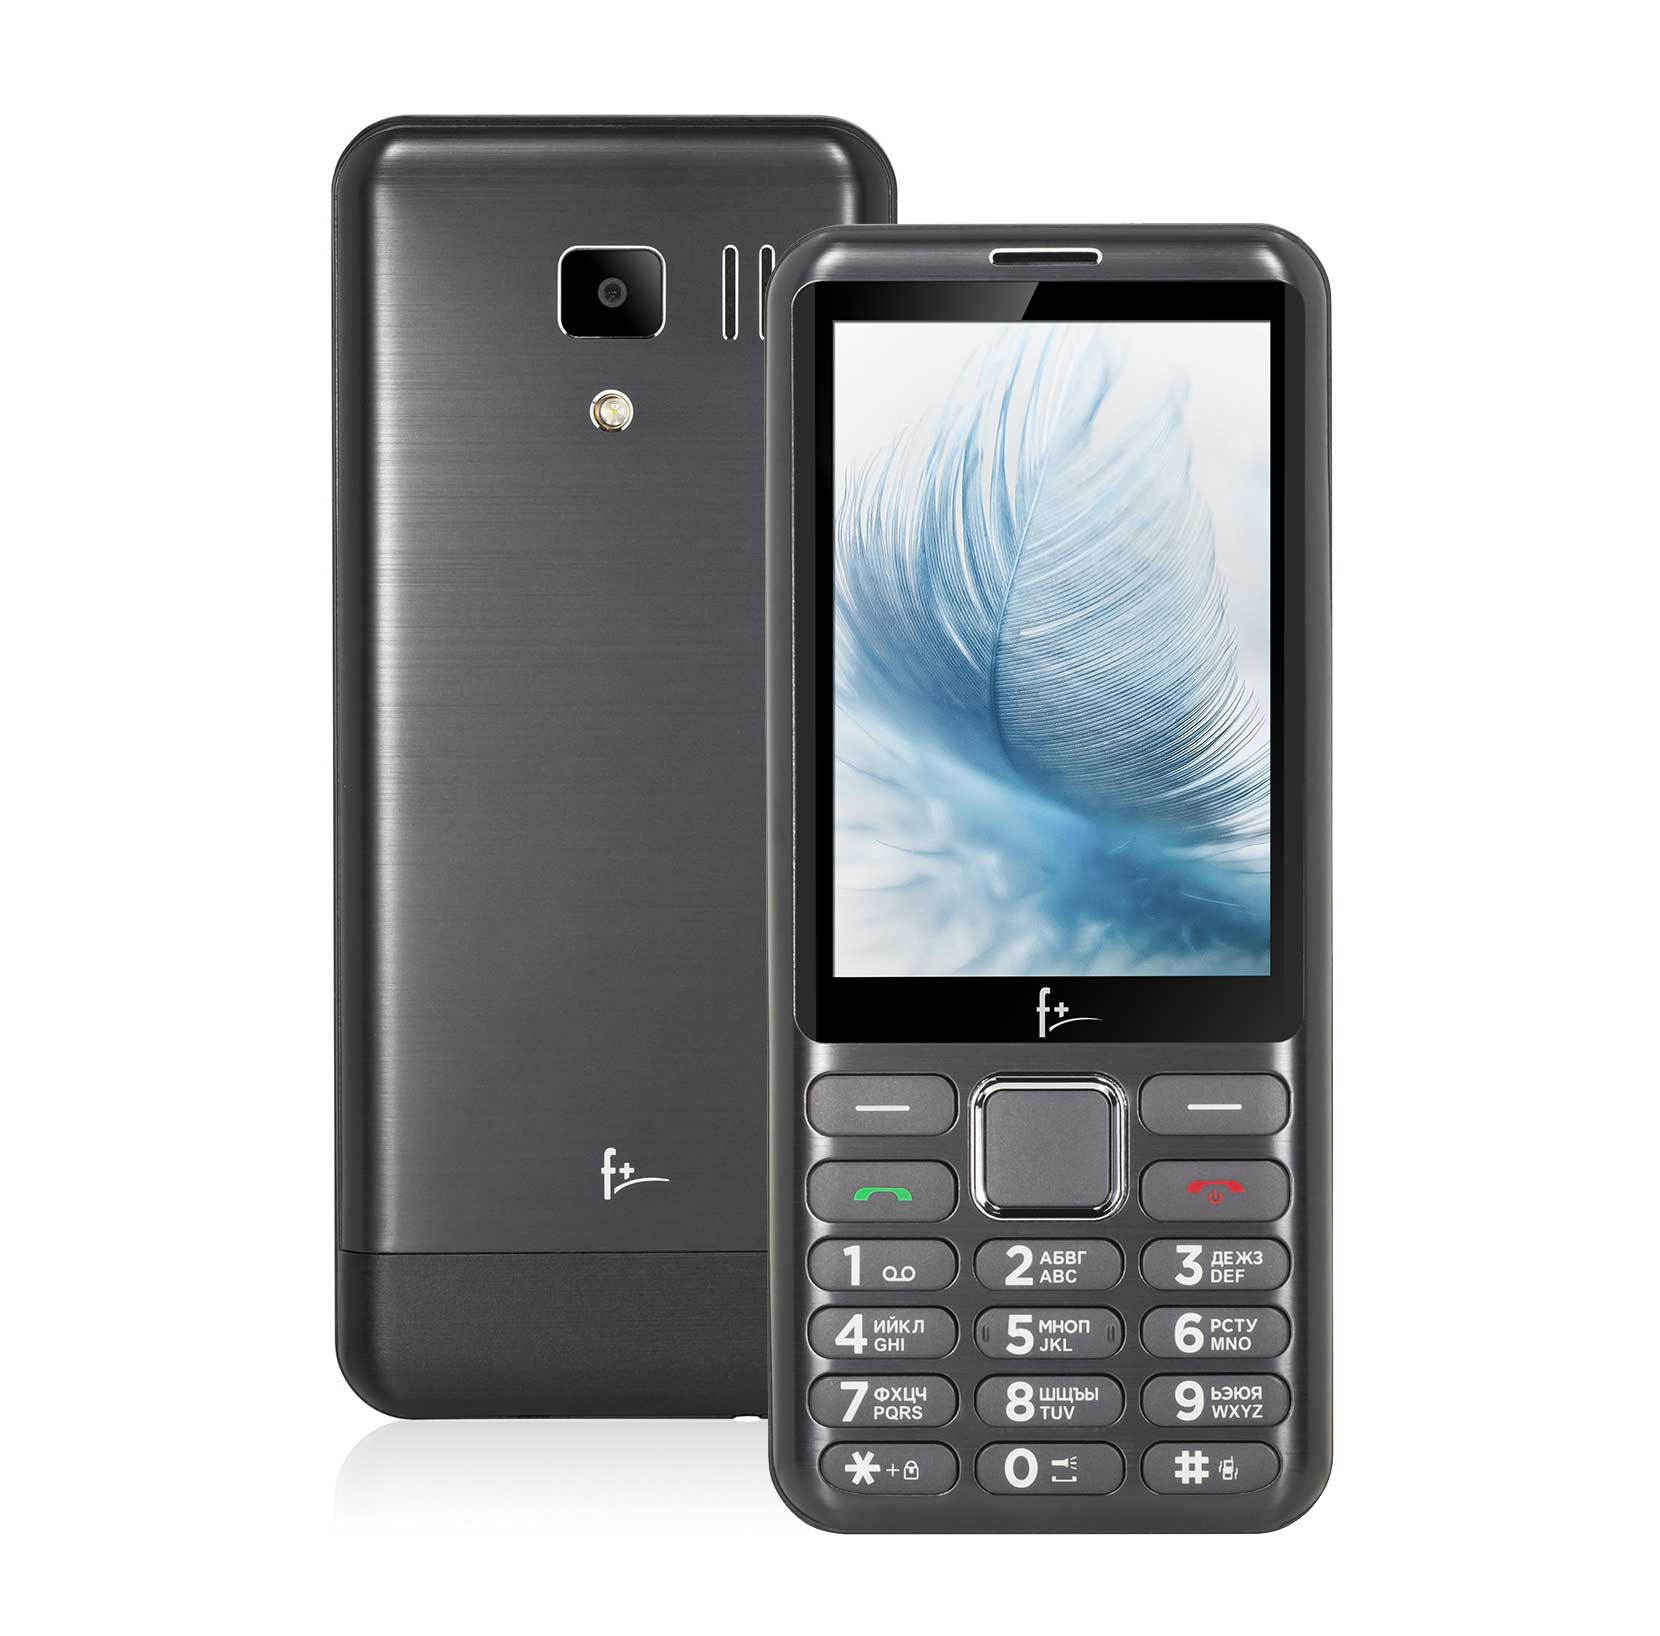 Мобильный телефон F+ S350 Dark Grey цена и фото